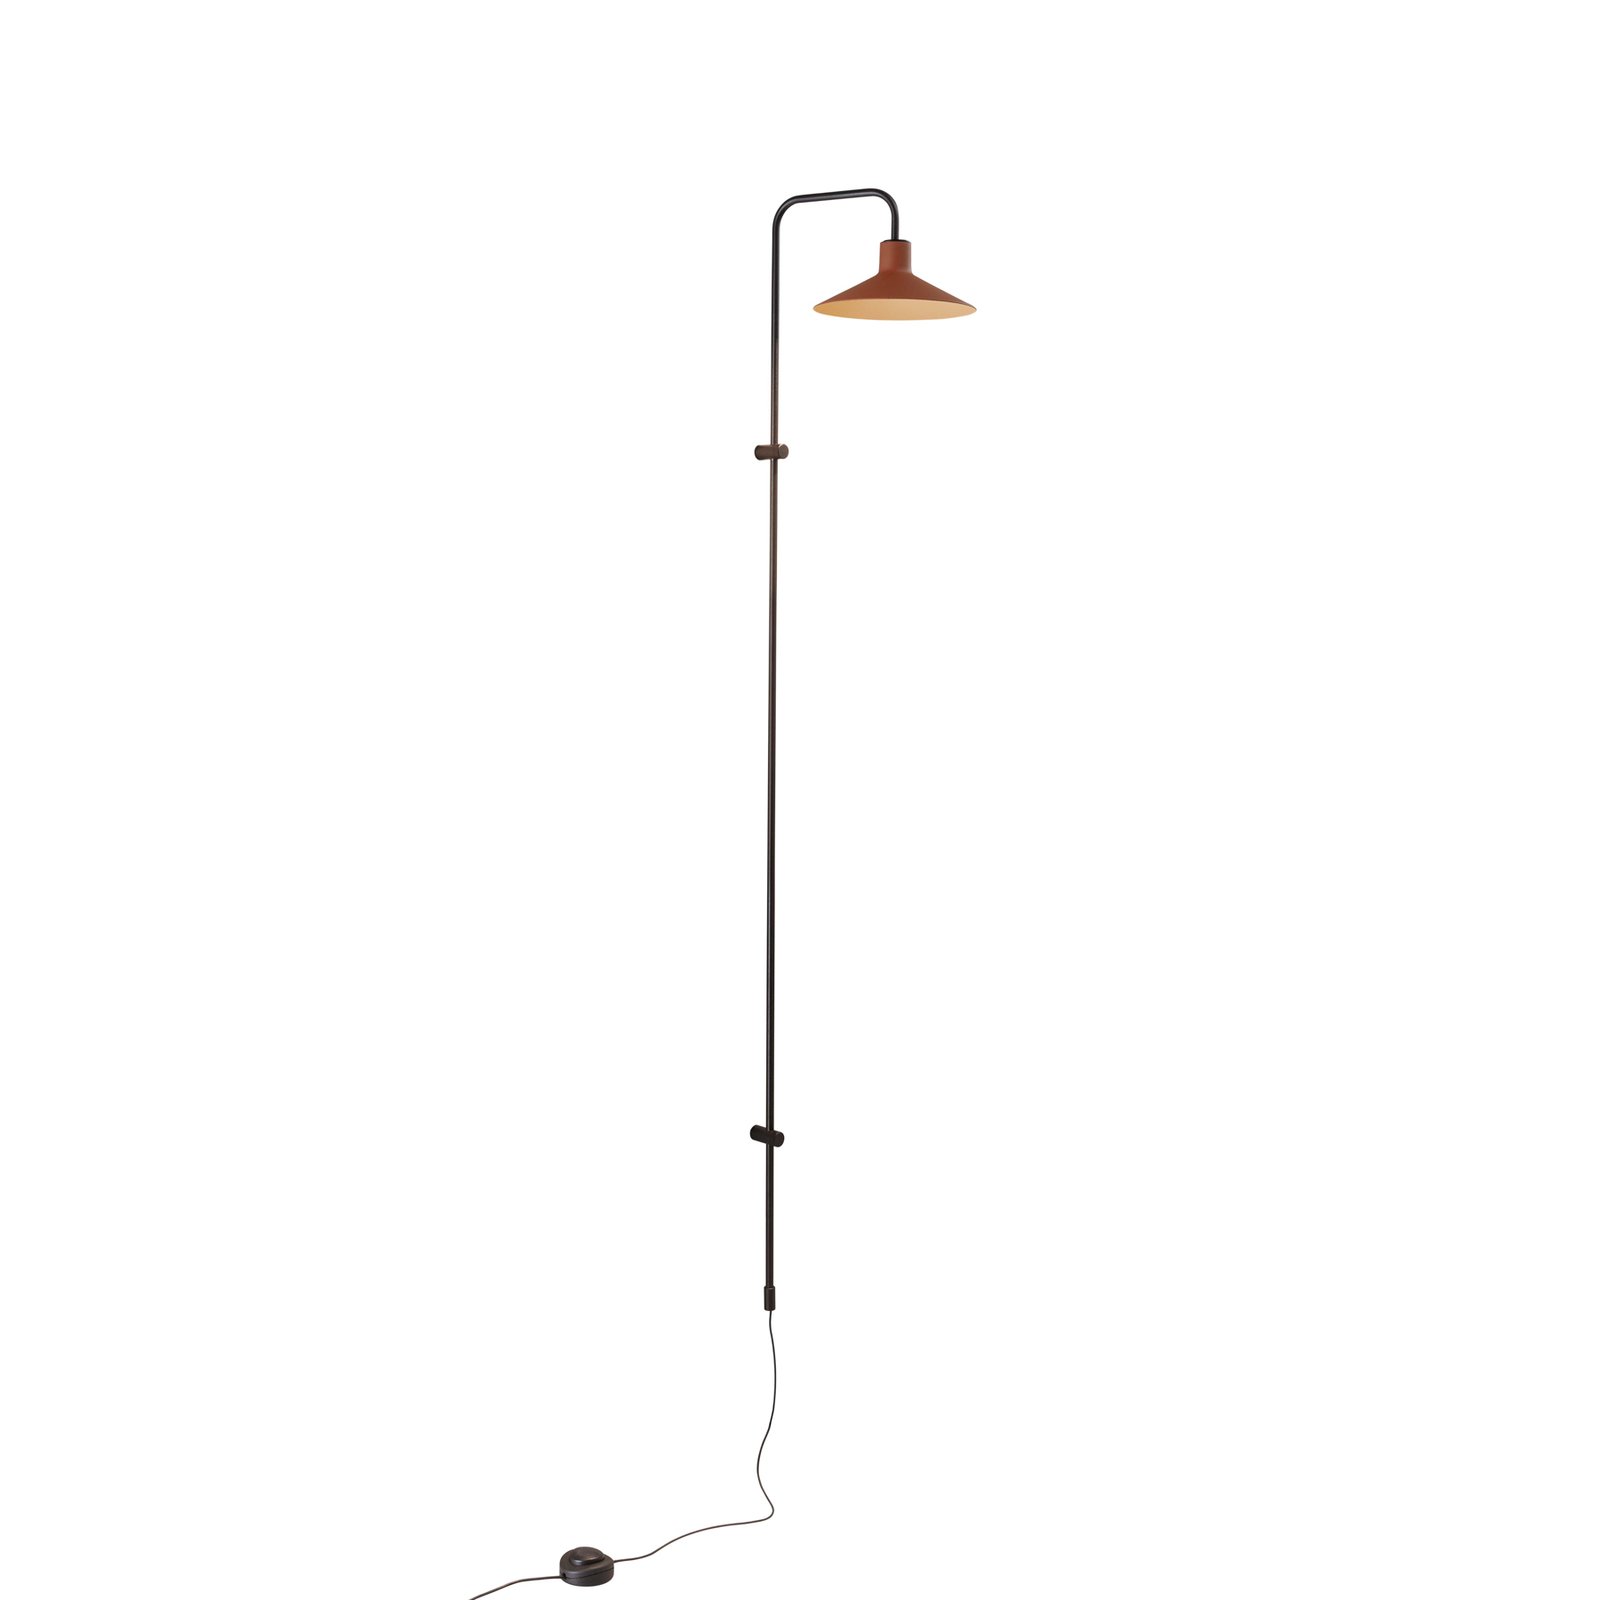 Bover Platet A05 LED-Wandlampe Dimmer, terracotta